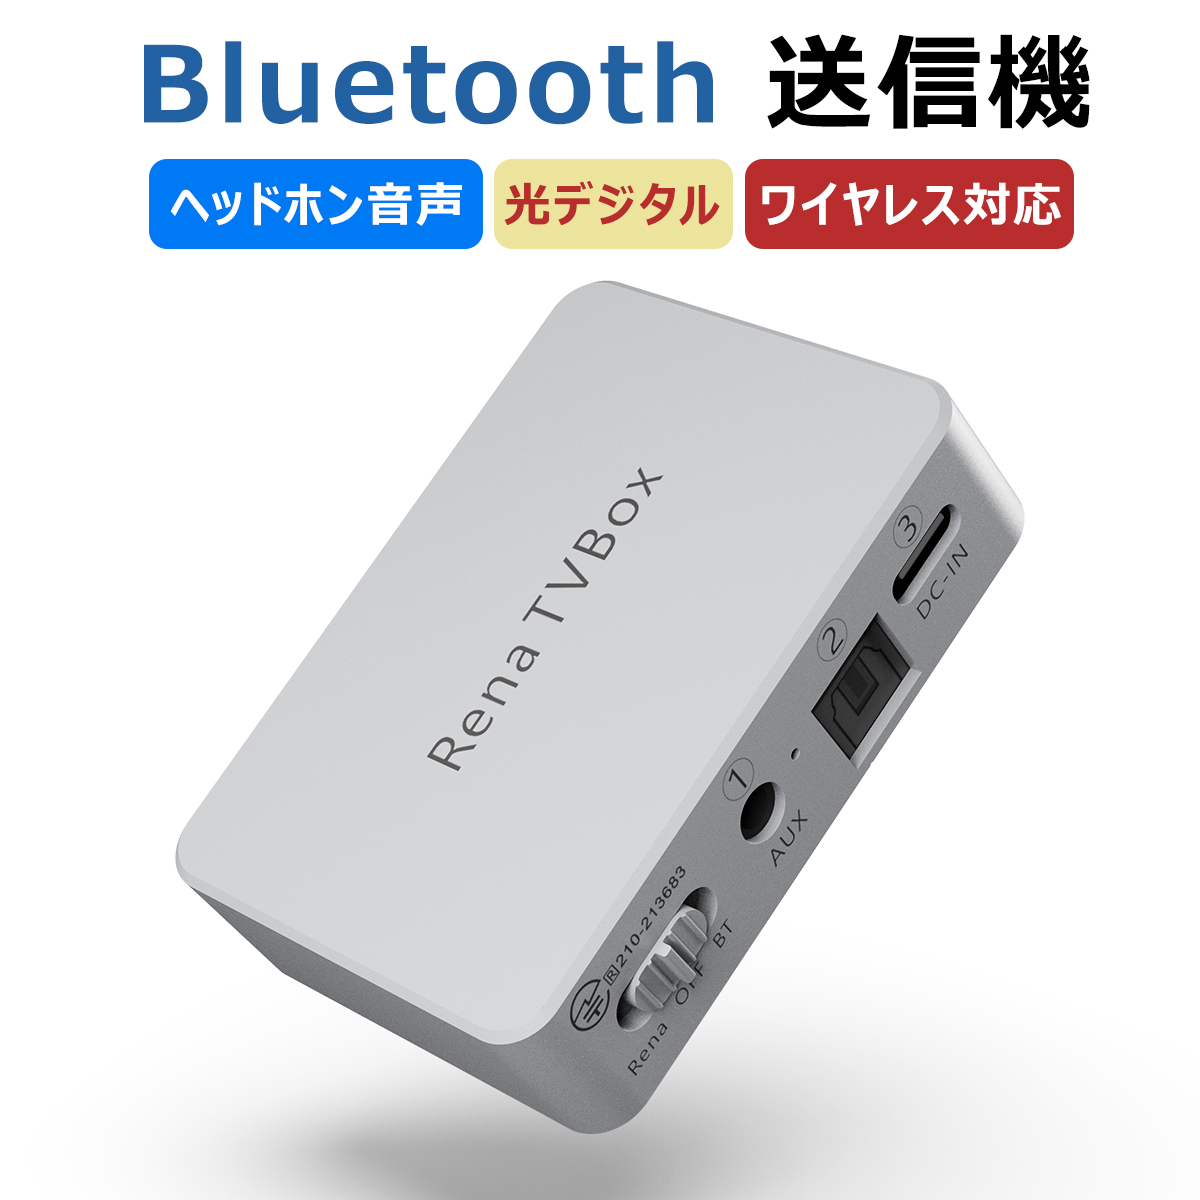 Bluetooth 送信機  bluetooth トランスミッター 光デジタル及びAUXヘッドホン音声デバイスには対応 テレビ オーディオ機器を無線化